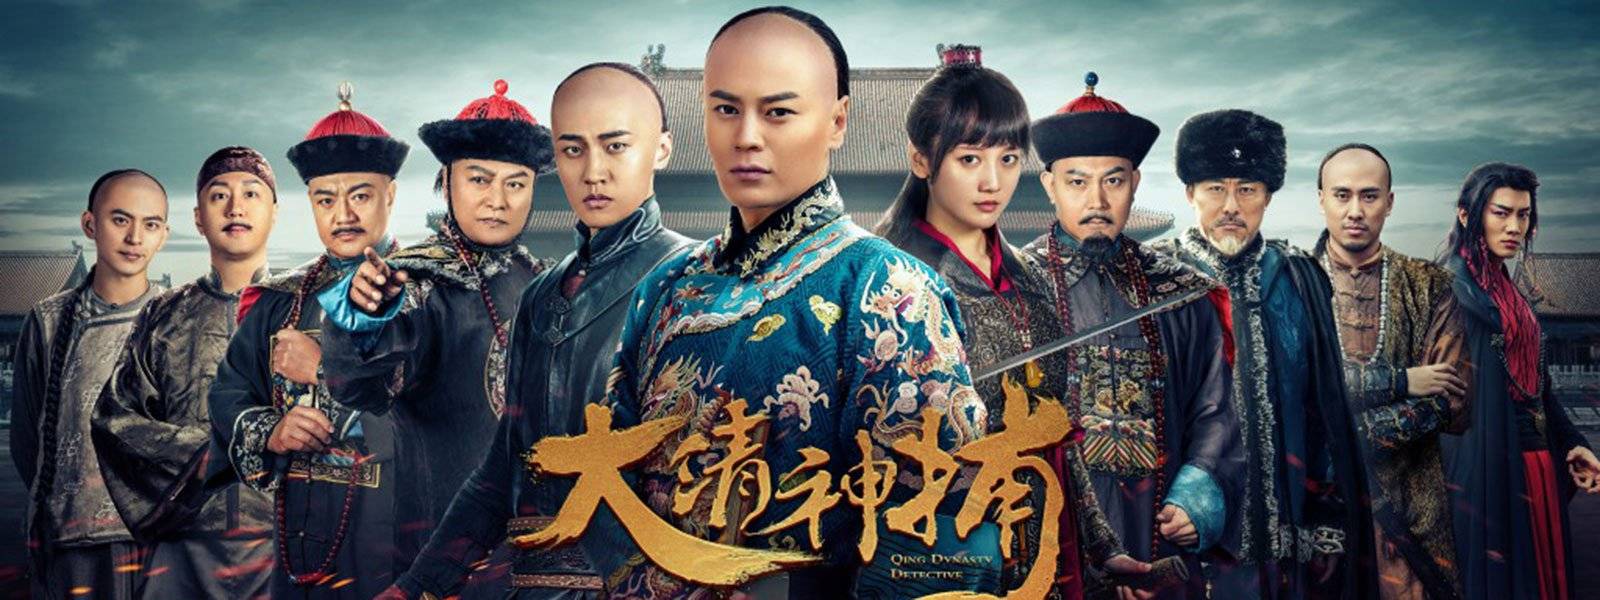 Qing Dynasty Detective / Qing Dynasty Detective (2018)